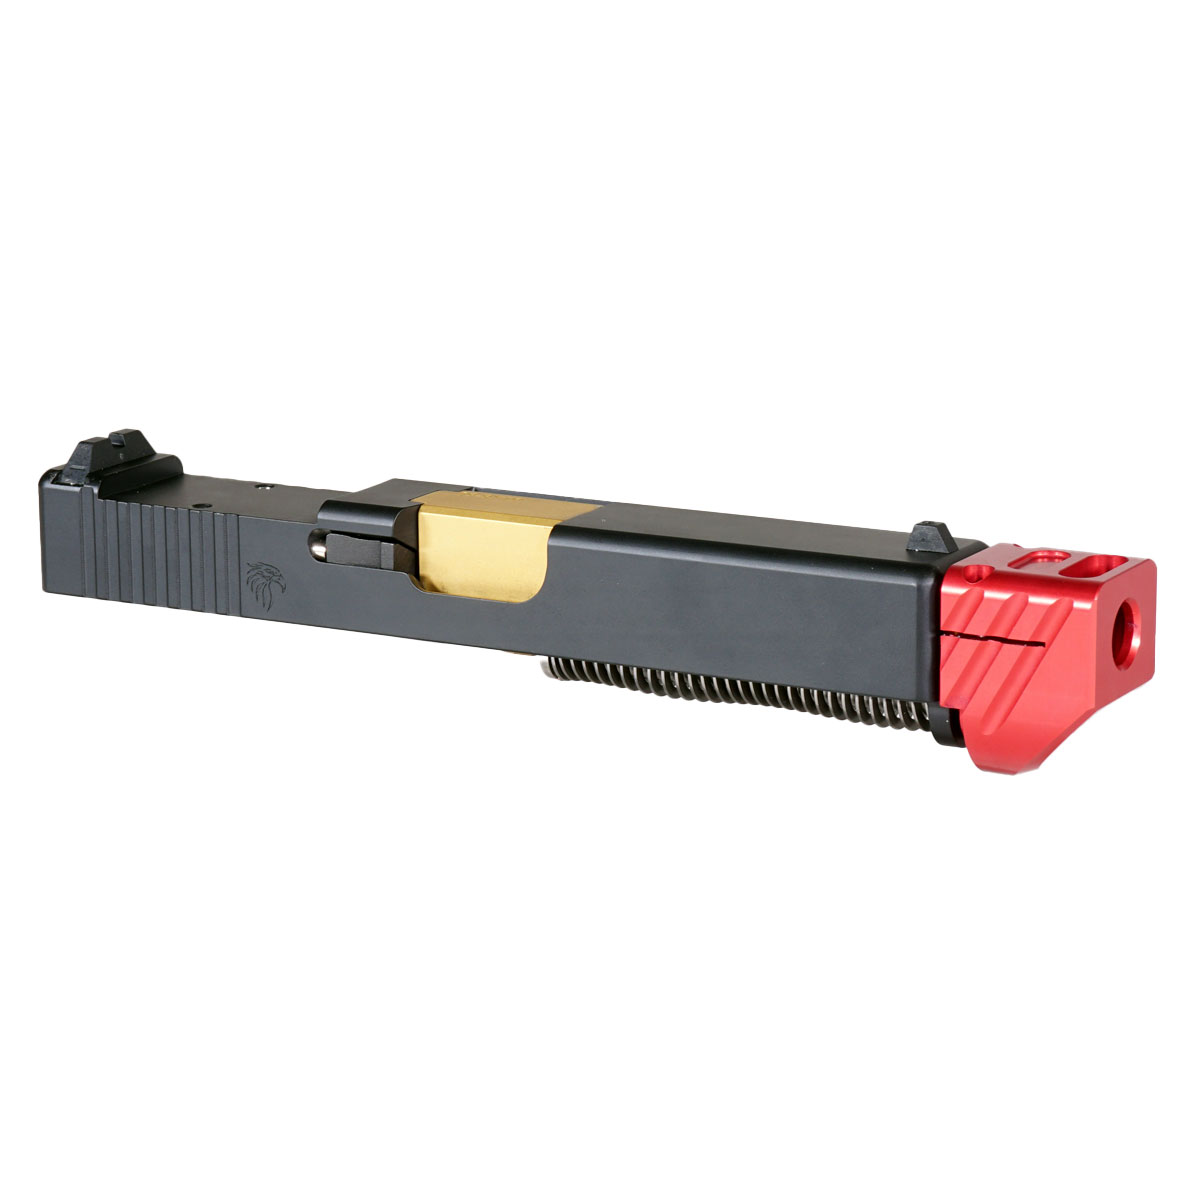 DDS 'Skyflash V3 w/ Red Compensator' 9mm Complete Slide Kit - Glock 19 Gen 1-3 Compatible